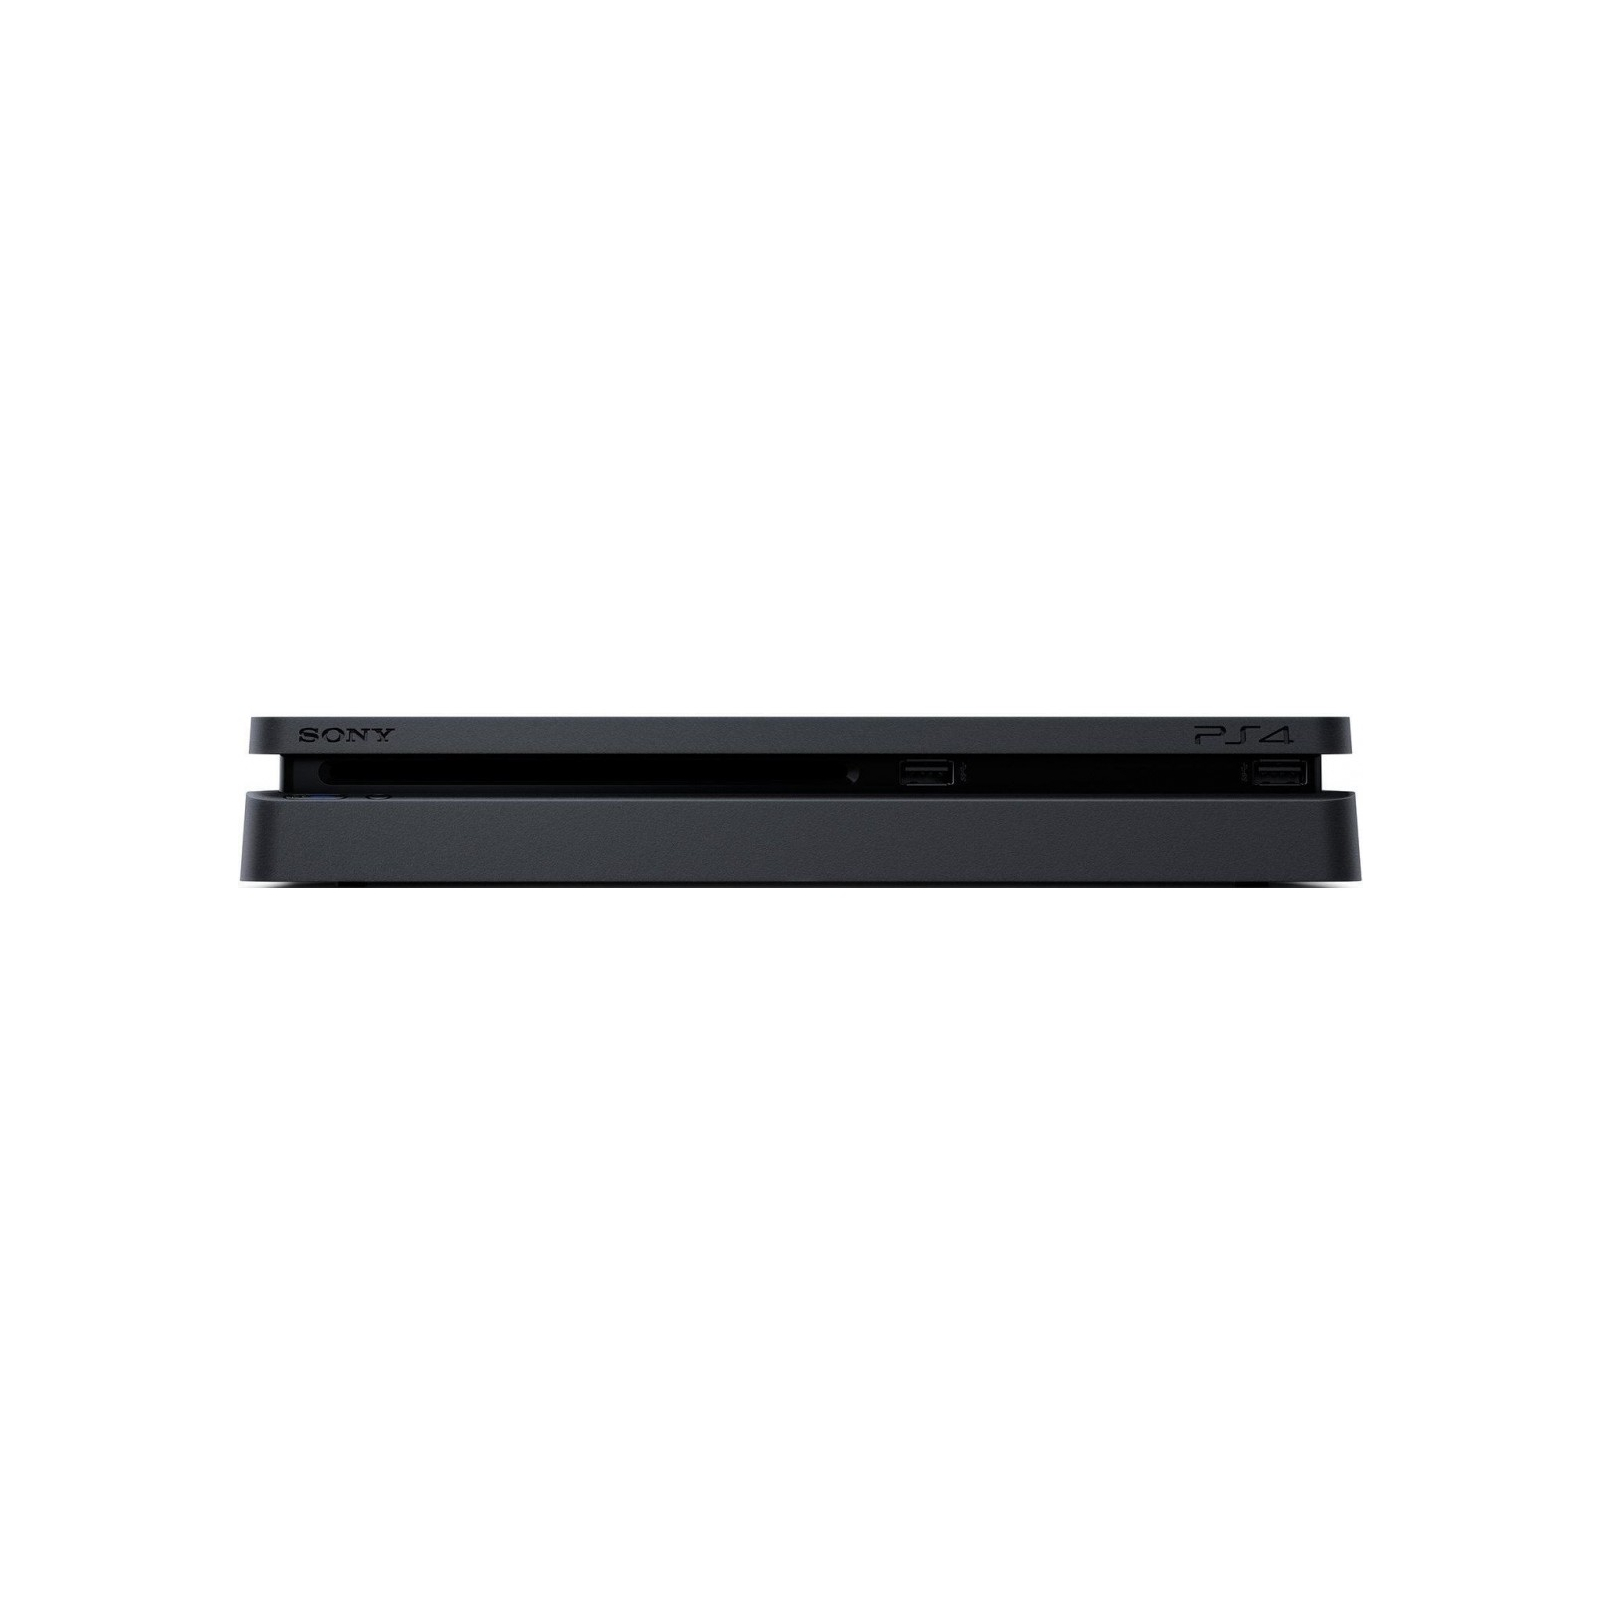 Игровая консоль Sony PS4 Slim 500Gb Black DC+HZD+RC+PSPlus 3М изображение 4